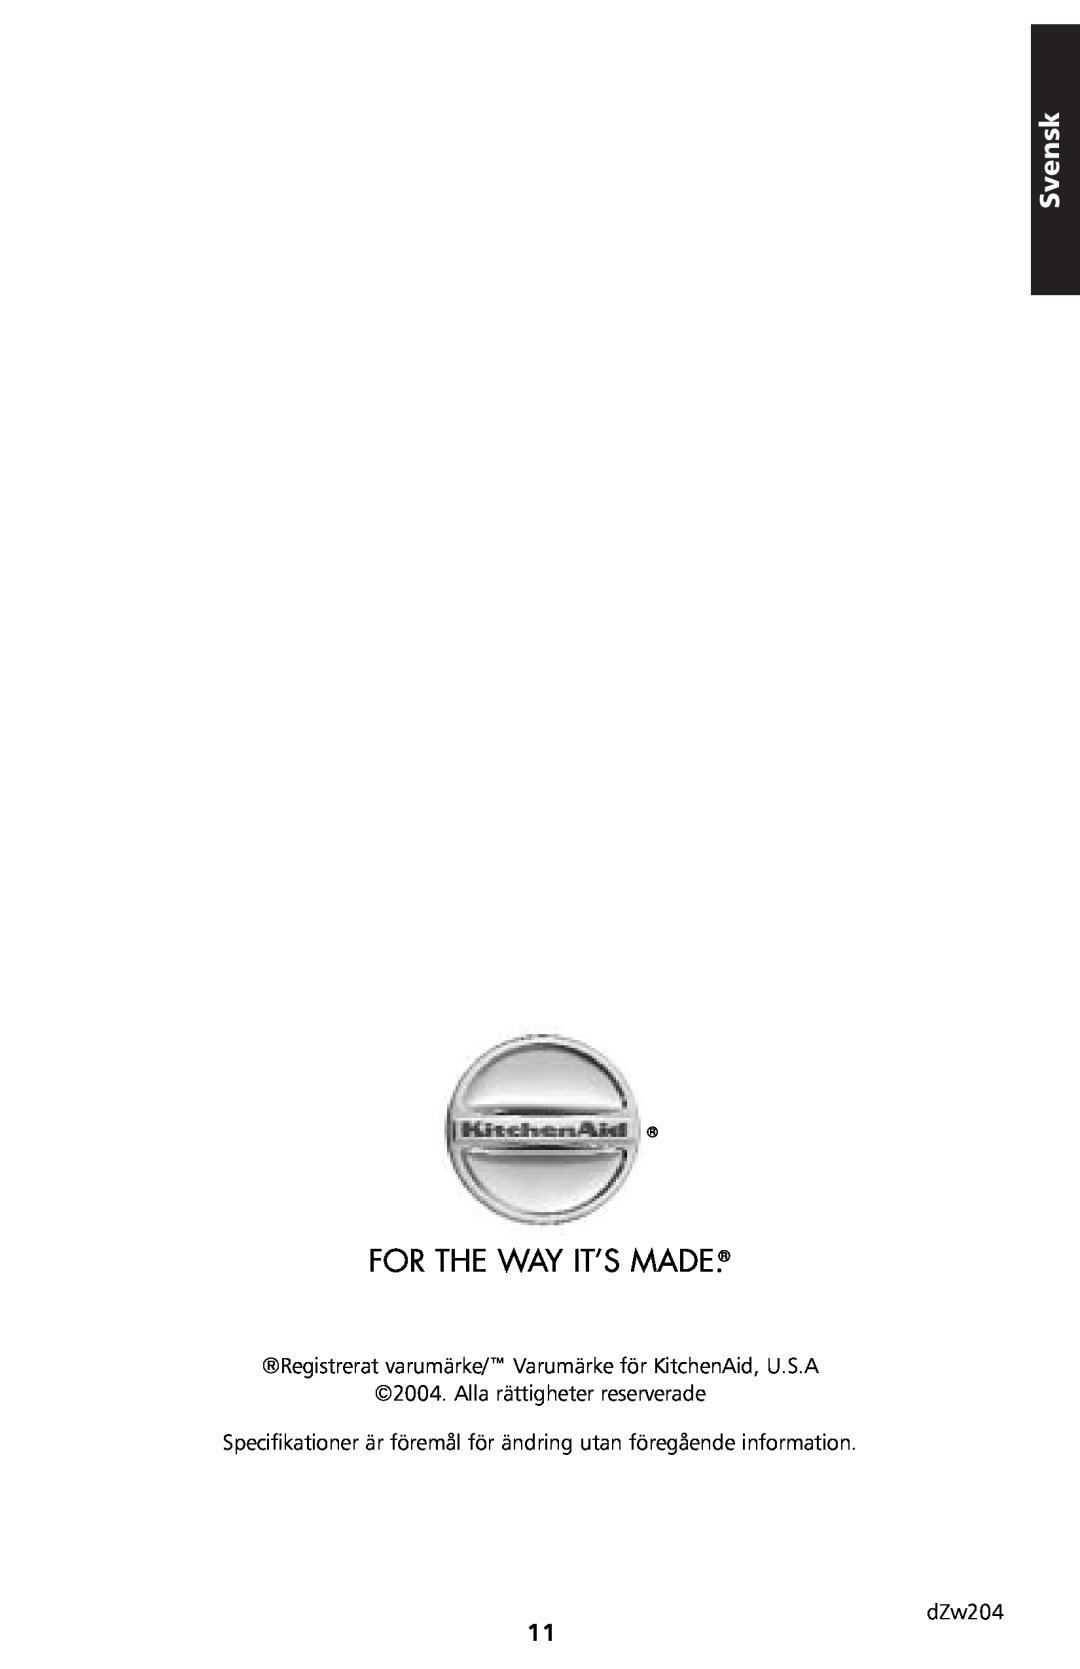 KitchenAid 5KTT890 manual For The Way It’S Made, Svensk, Alla rättigheter reserverade, dZw204 